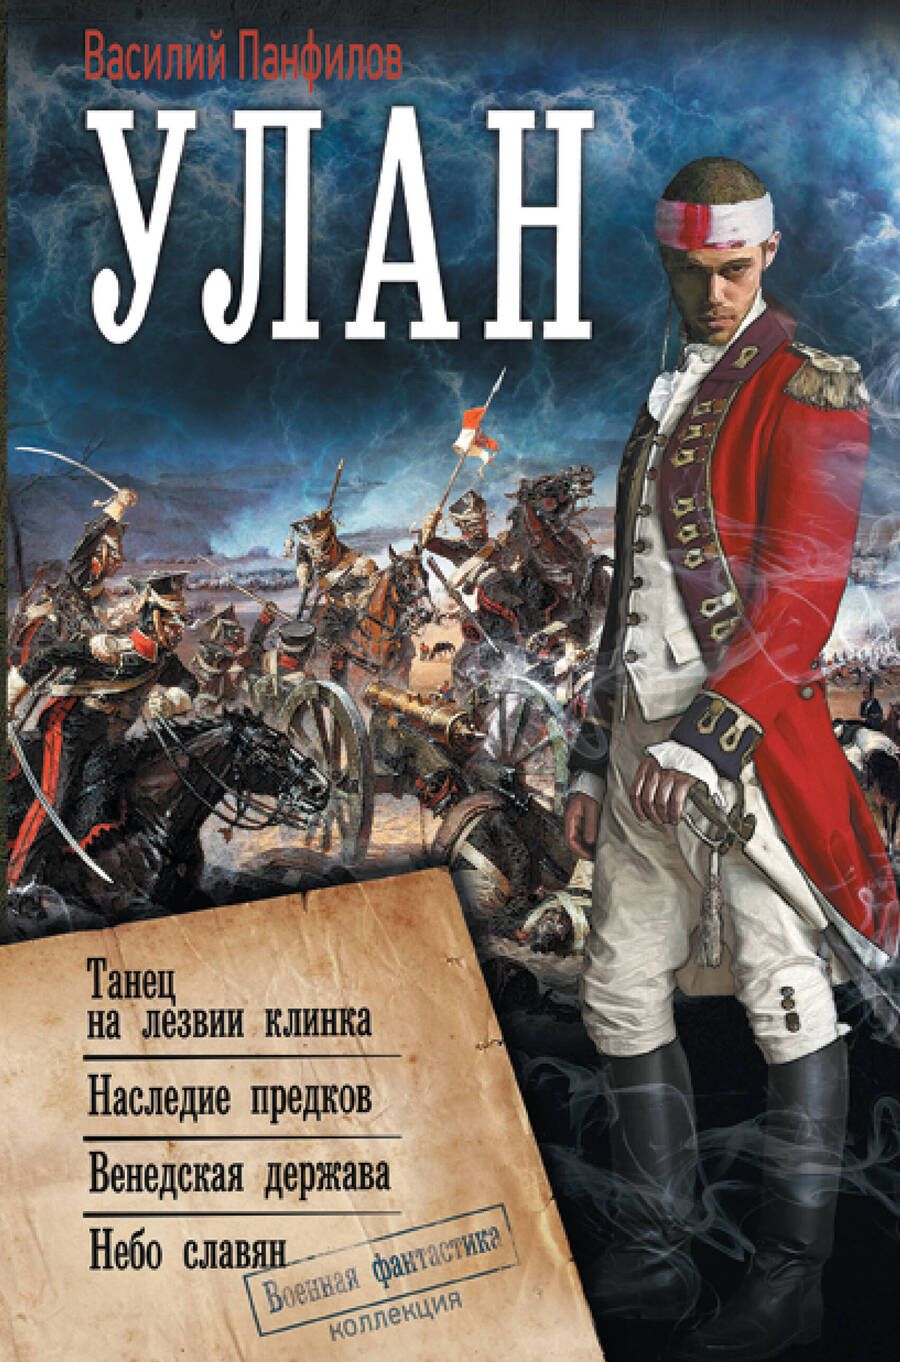 Обложка книги "Панфилов: Улан"